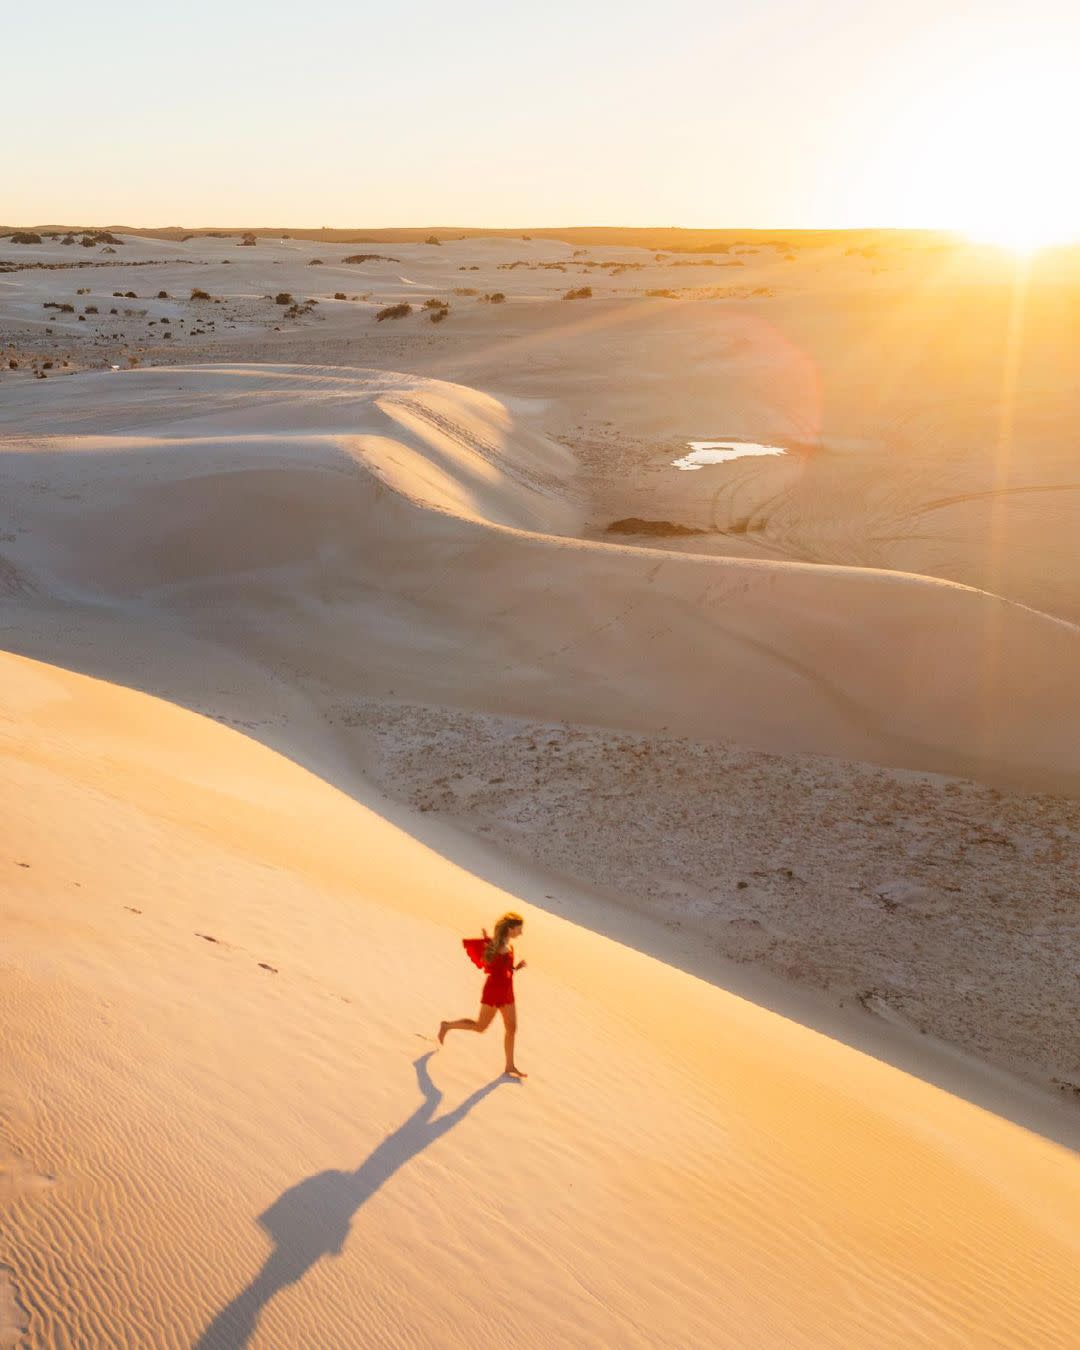 Lancelin Sand Dunes | Captured by @dylan_alcock (IG)